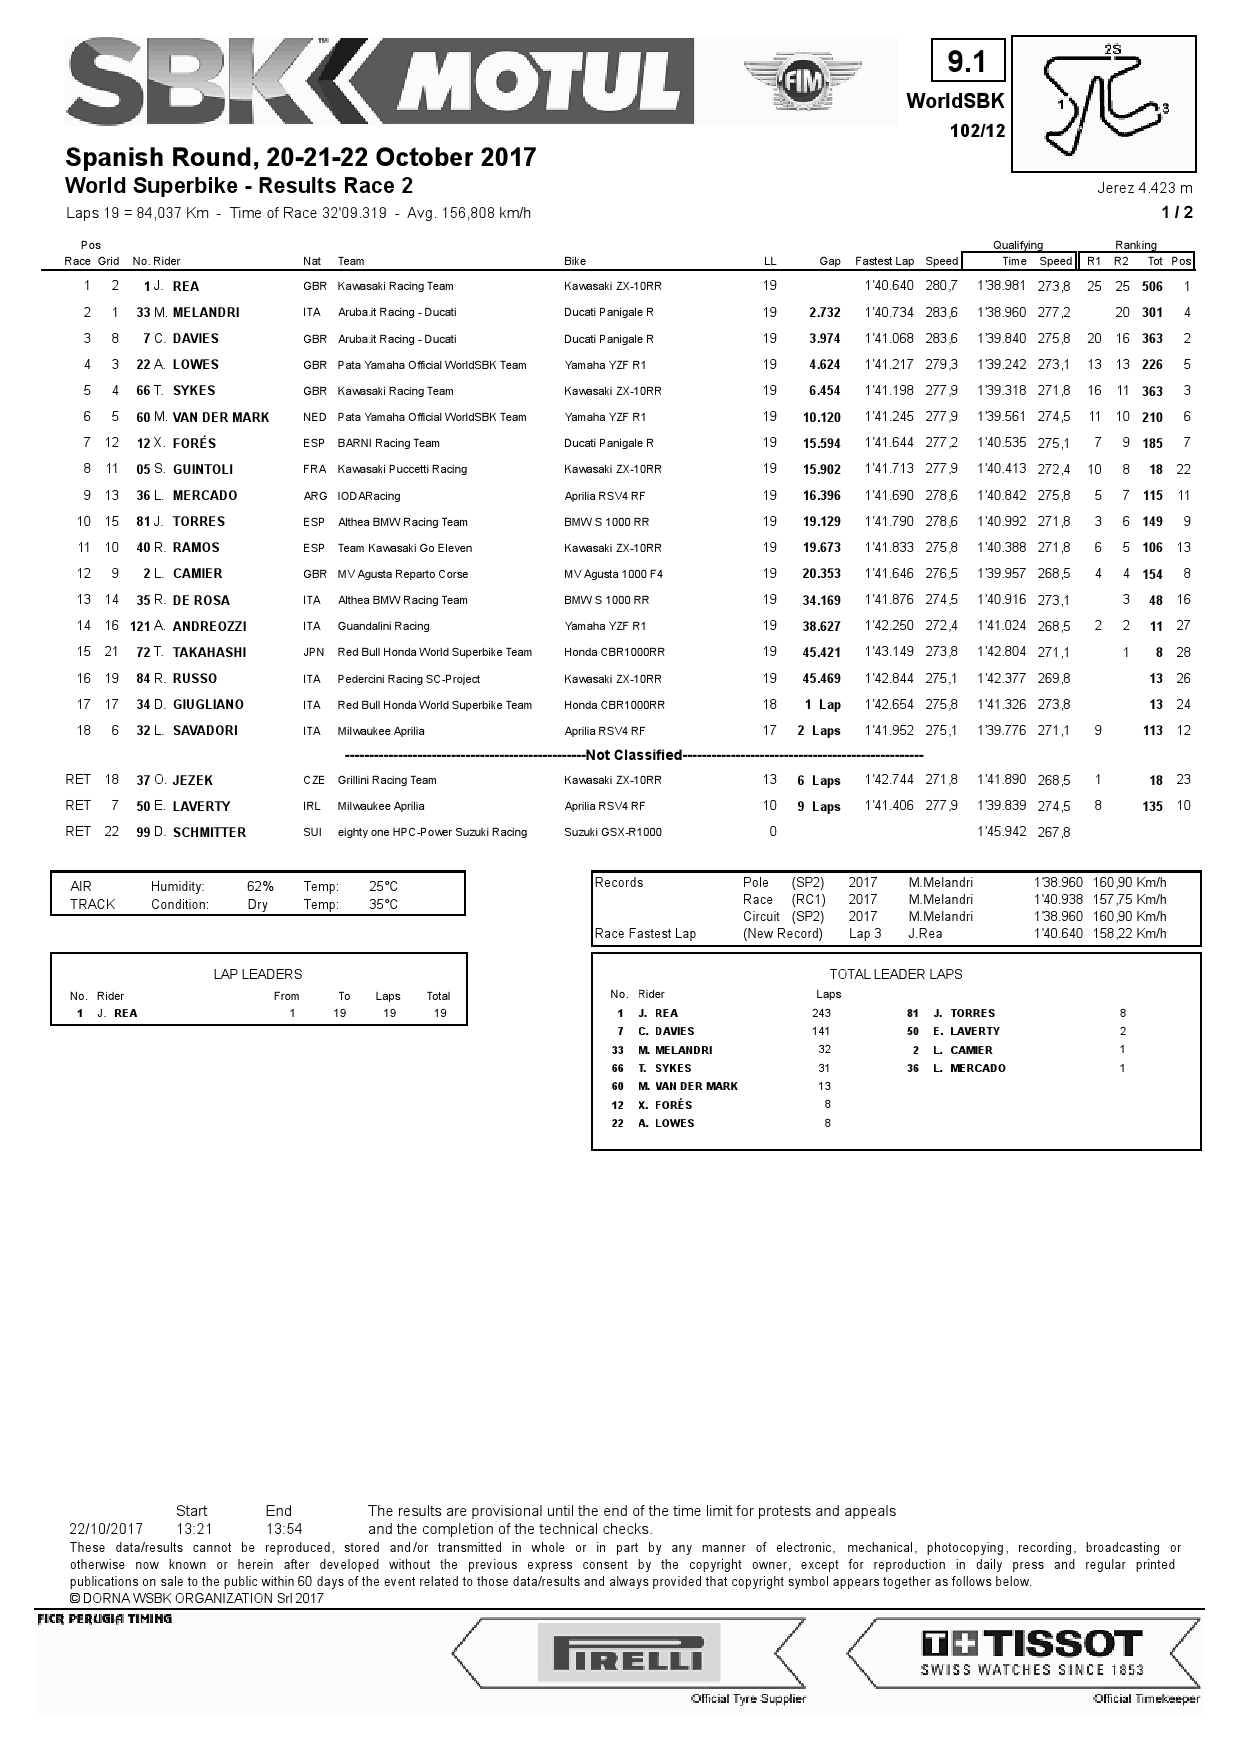 Результаты 2-й гонки World Superbike в Circuito de Jerez, 22.10.2017